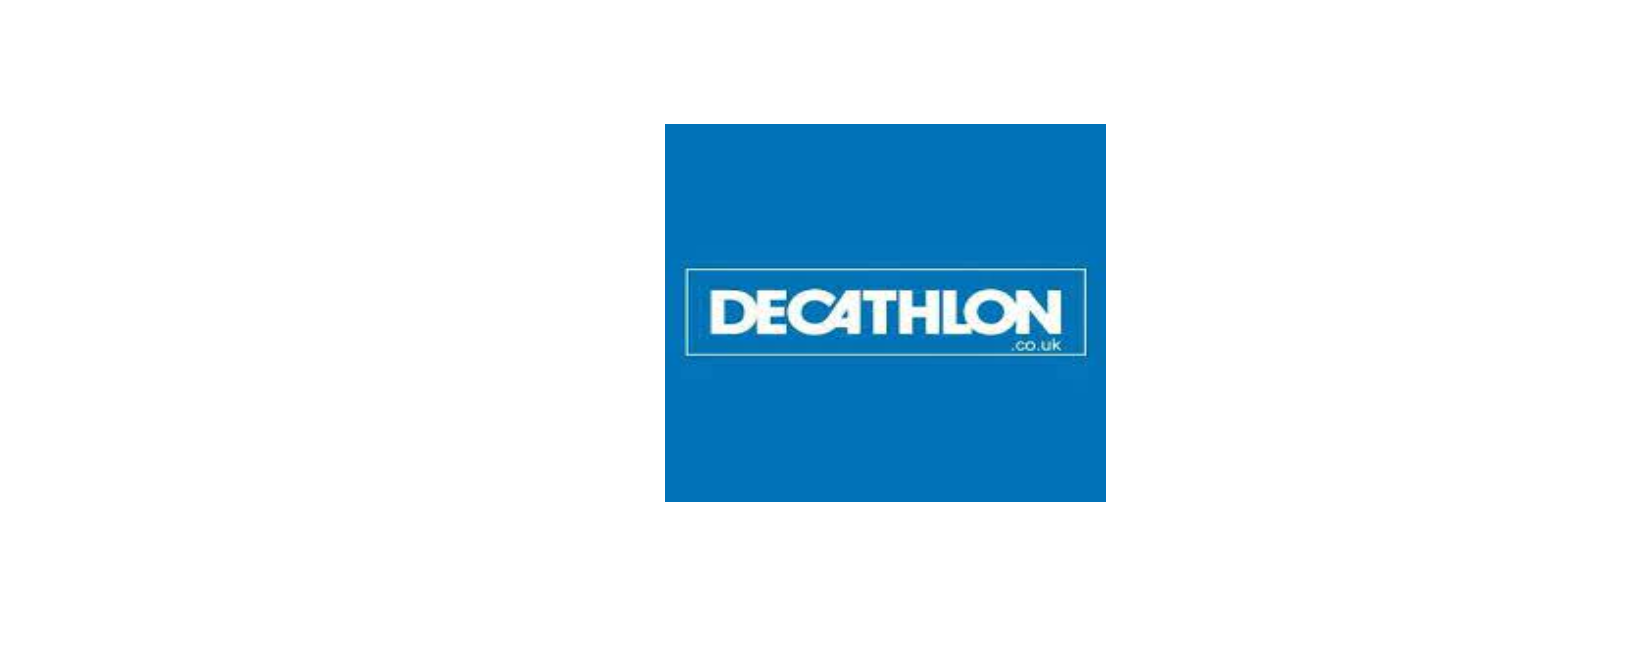 Decathlon UK Discount Code 2022